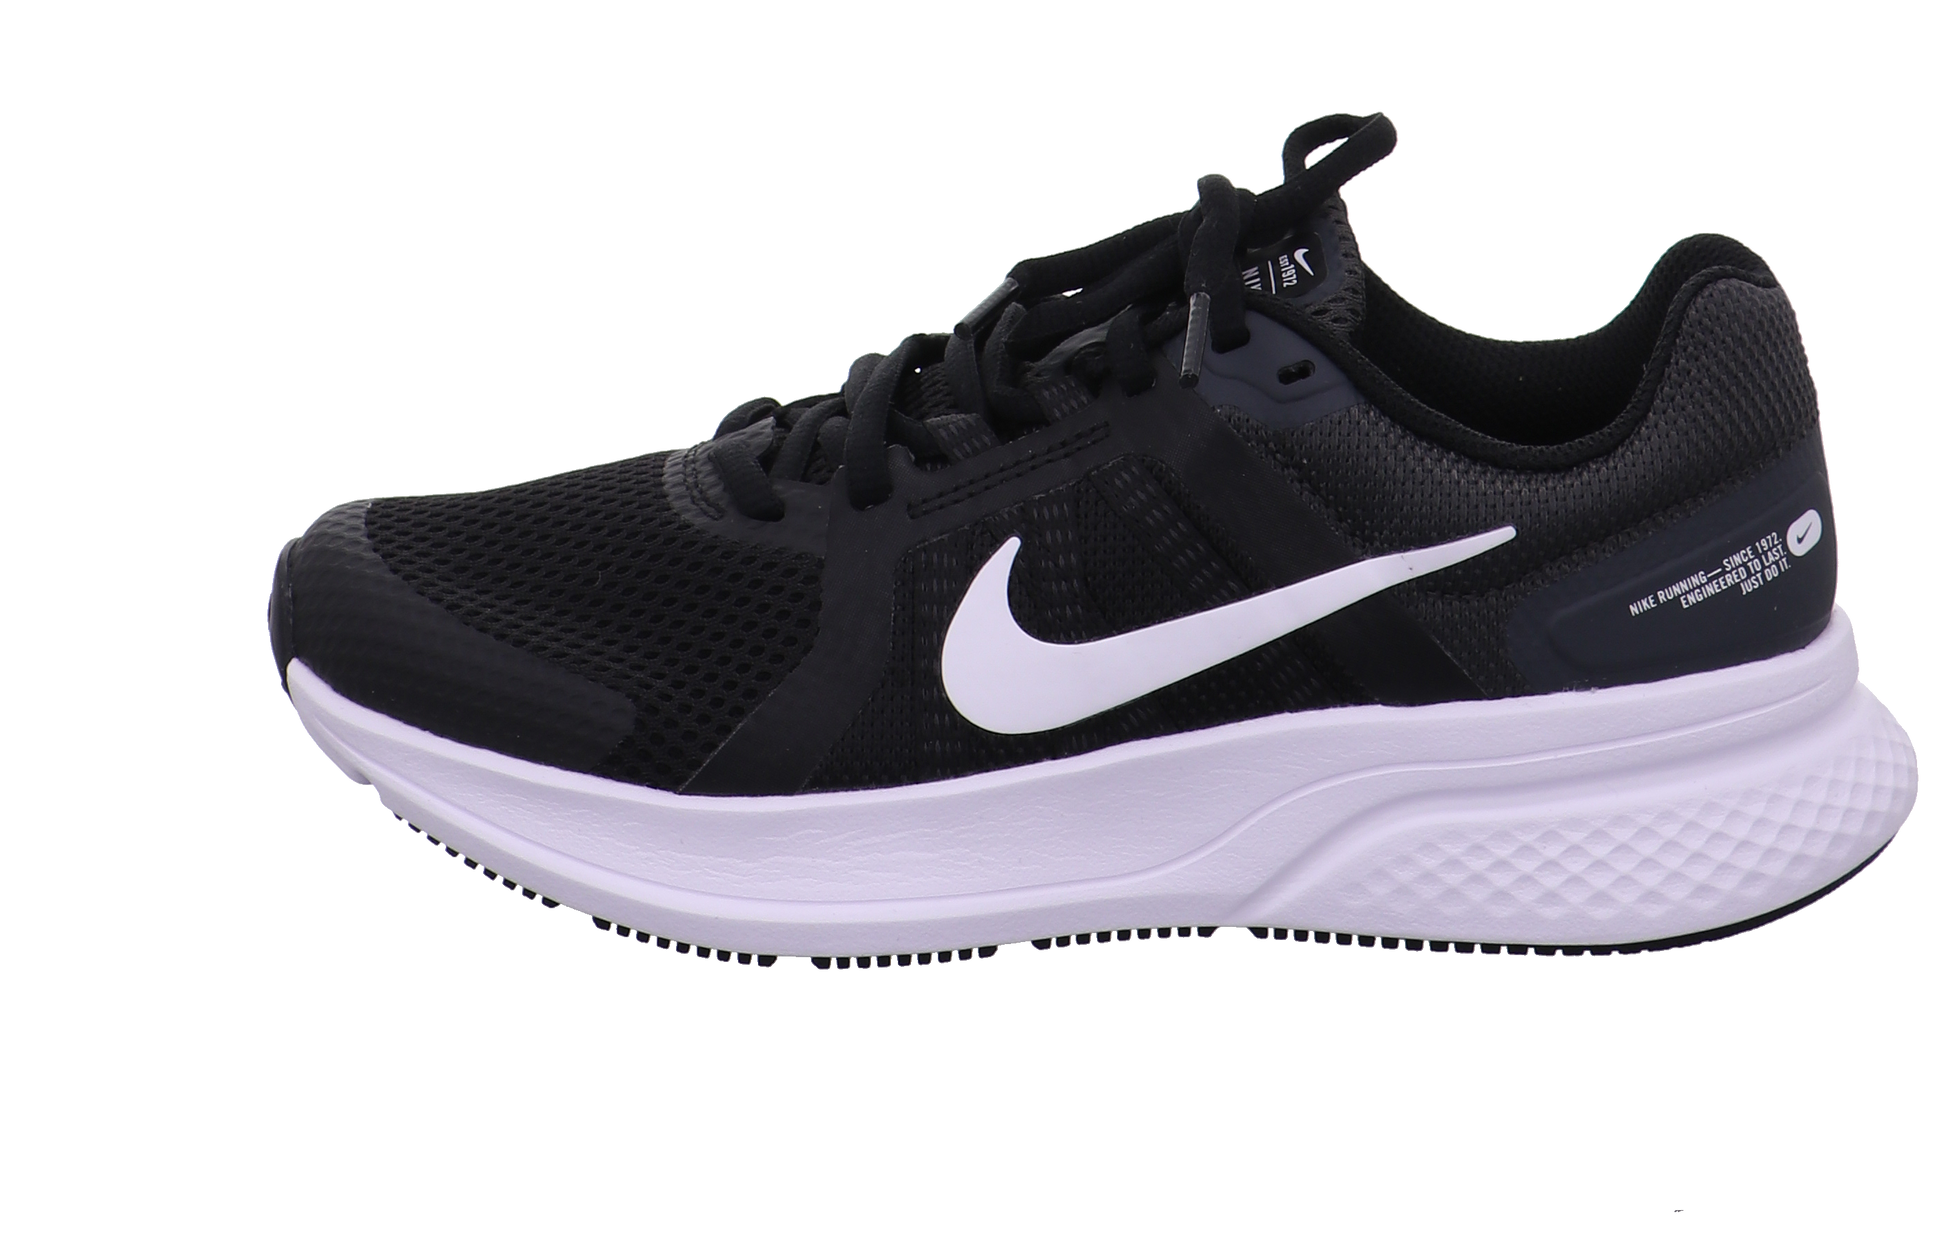 Nike Training und Hallenschuhe schwarz-weiß Bild1